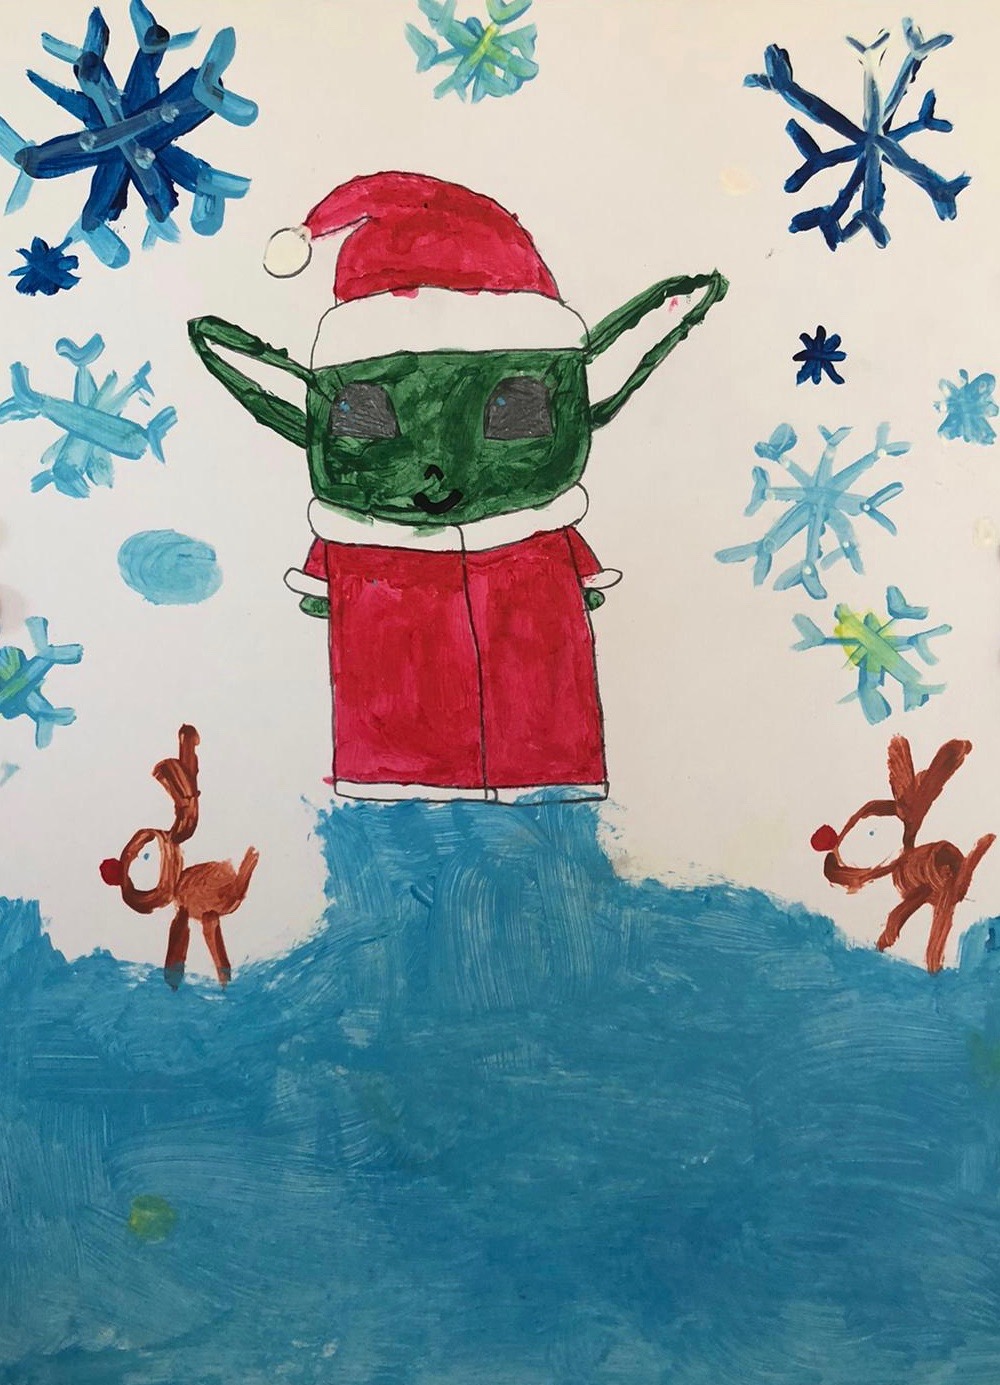 'Christmas creativity' by Naoise (6) from Cavan